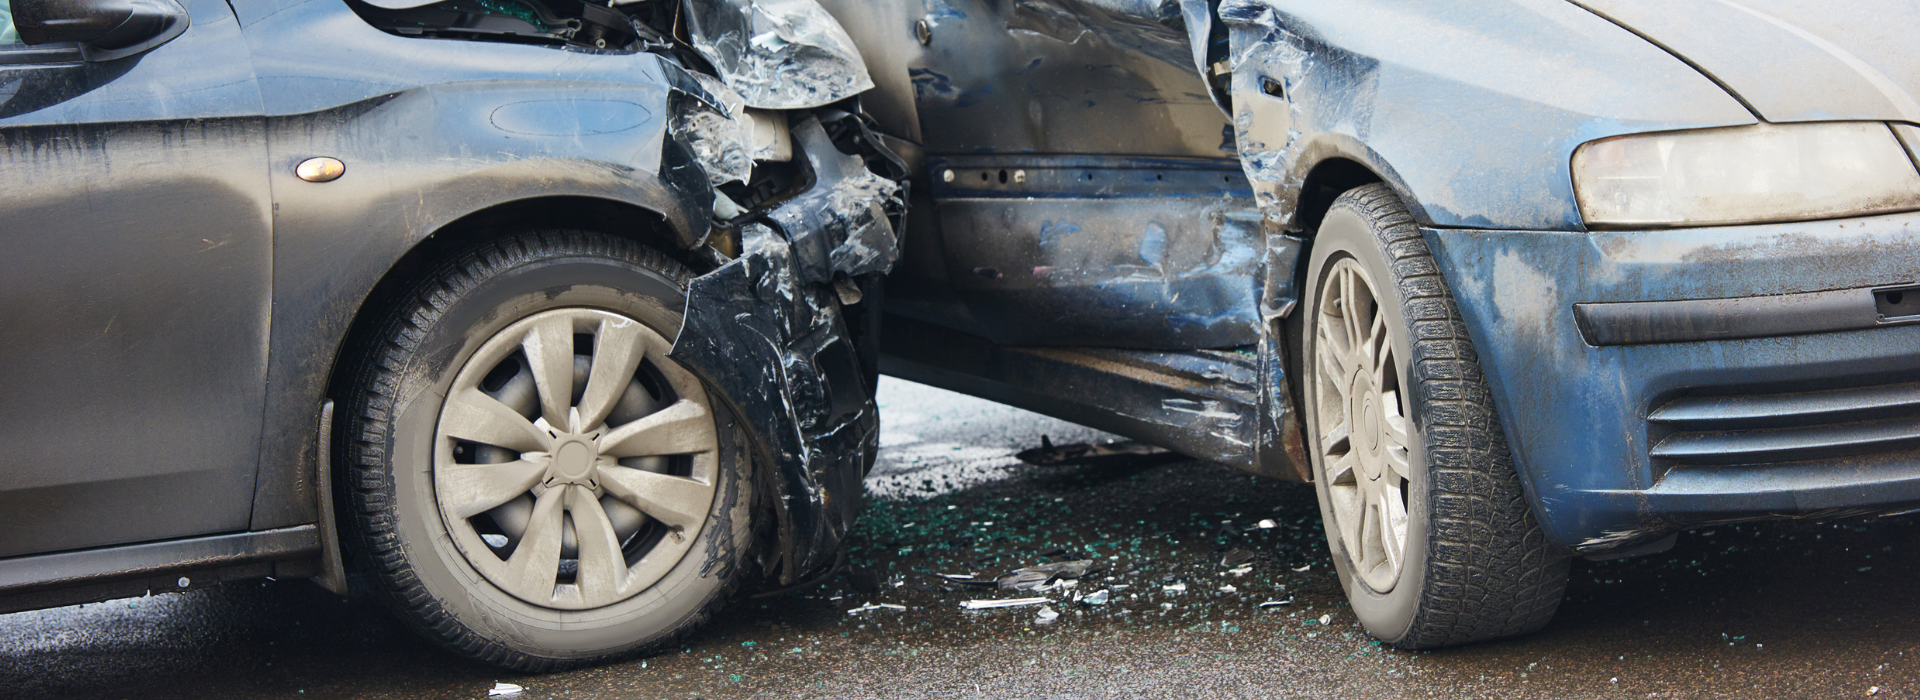 כולם יודעים שחגורות בטיחות הן אמצעי ההגנה החשוב ביותר ברכב. הן מצילות חיים ומפחיתות משמעותית את הסיכון לפציעות קשות ואף למוות בתאונות דרכים. בישראל ישנו חוק חגורת בטיחות.